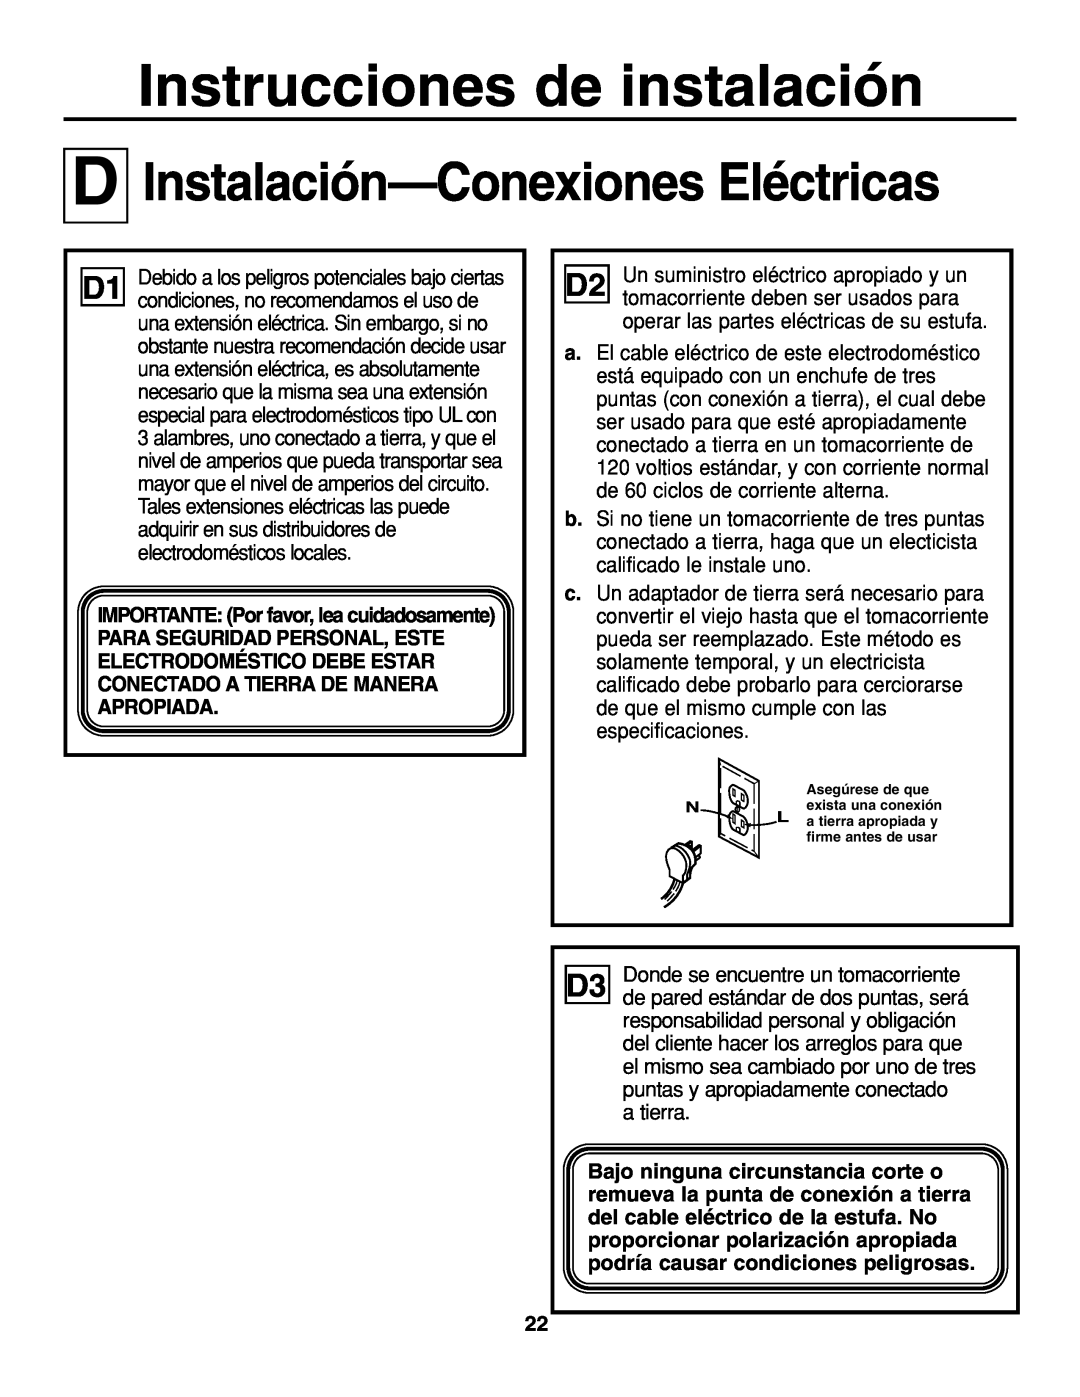 GE JGP637 installation instructions D Instalación-Conexiones Eléctricas, Instrucciones de instalación 